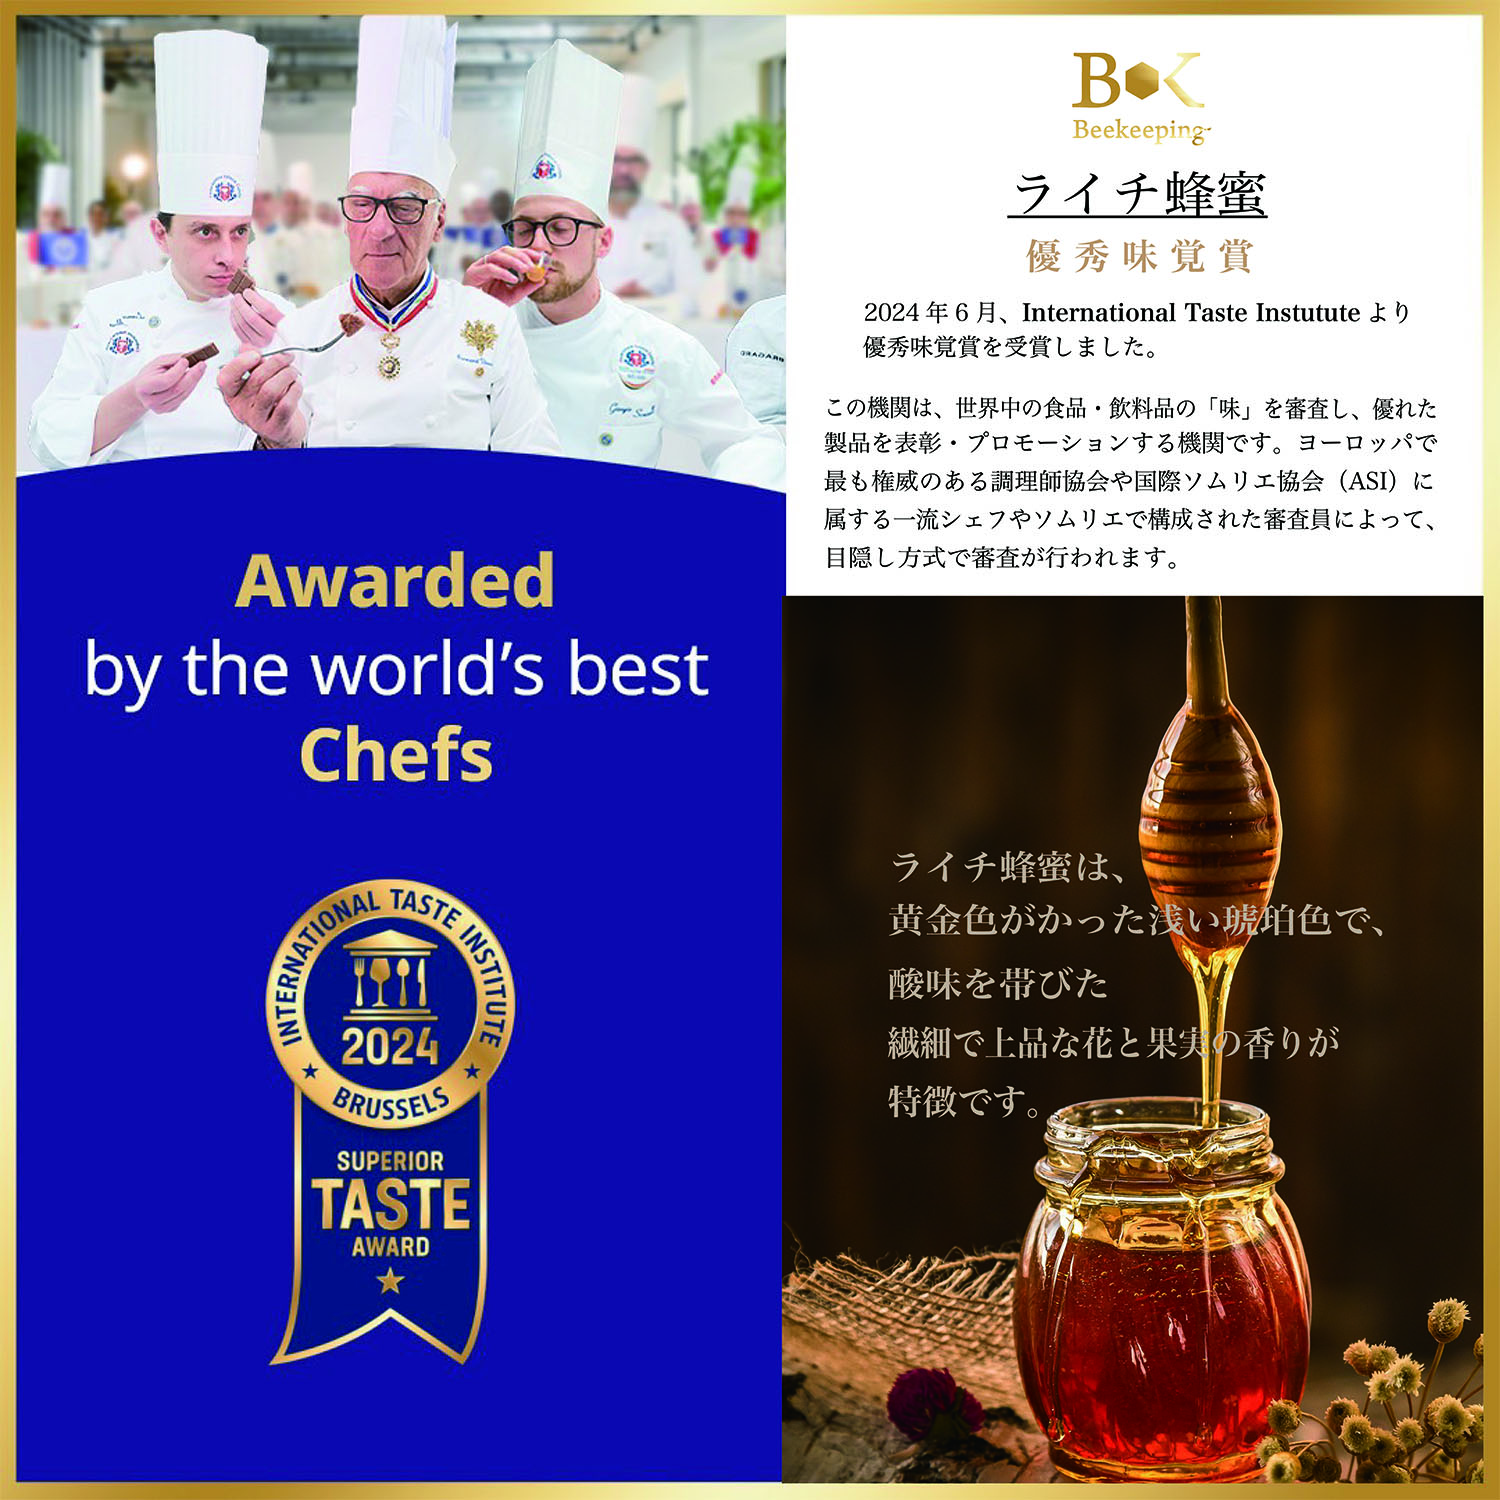 台湾産ライチ蜂蜜はInternational Taste Instituteより優秀味覚賞を受賞